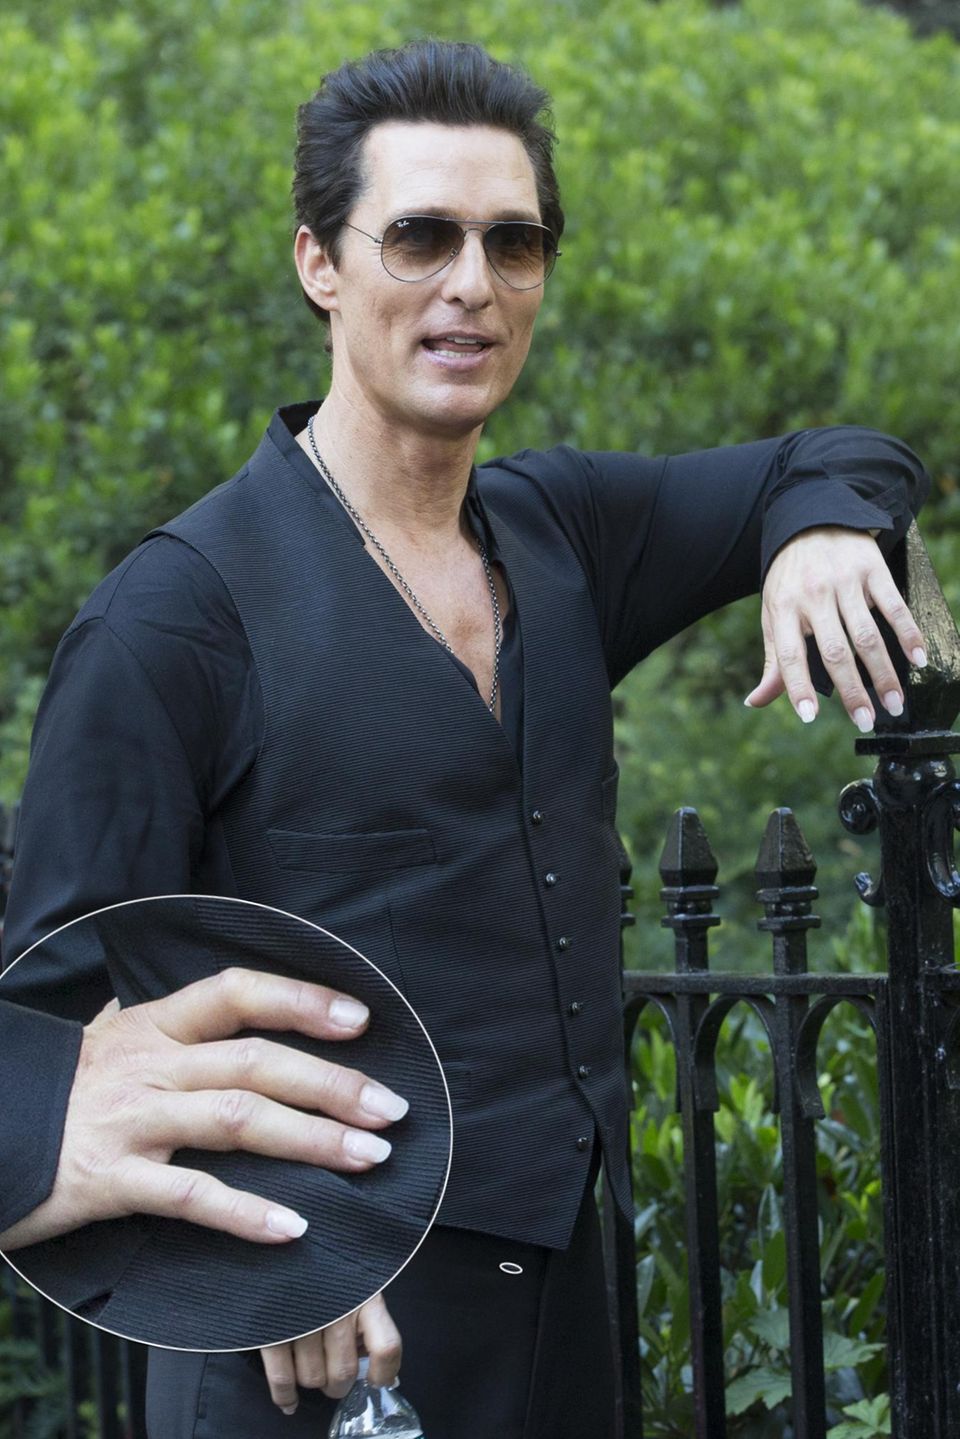 Für die Rolle trägt er perfekt manikürte Fingernägel: Matthew McConaughey bei den Dreharbeiten am Set von "The Dark Tower" in New York.